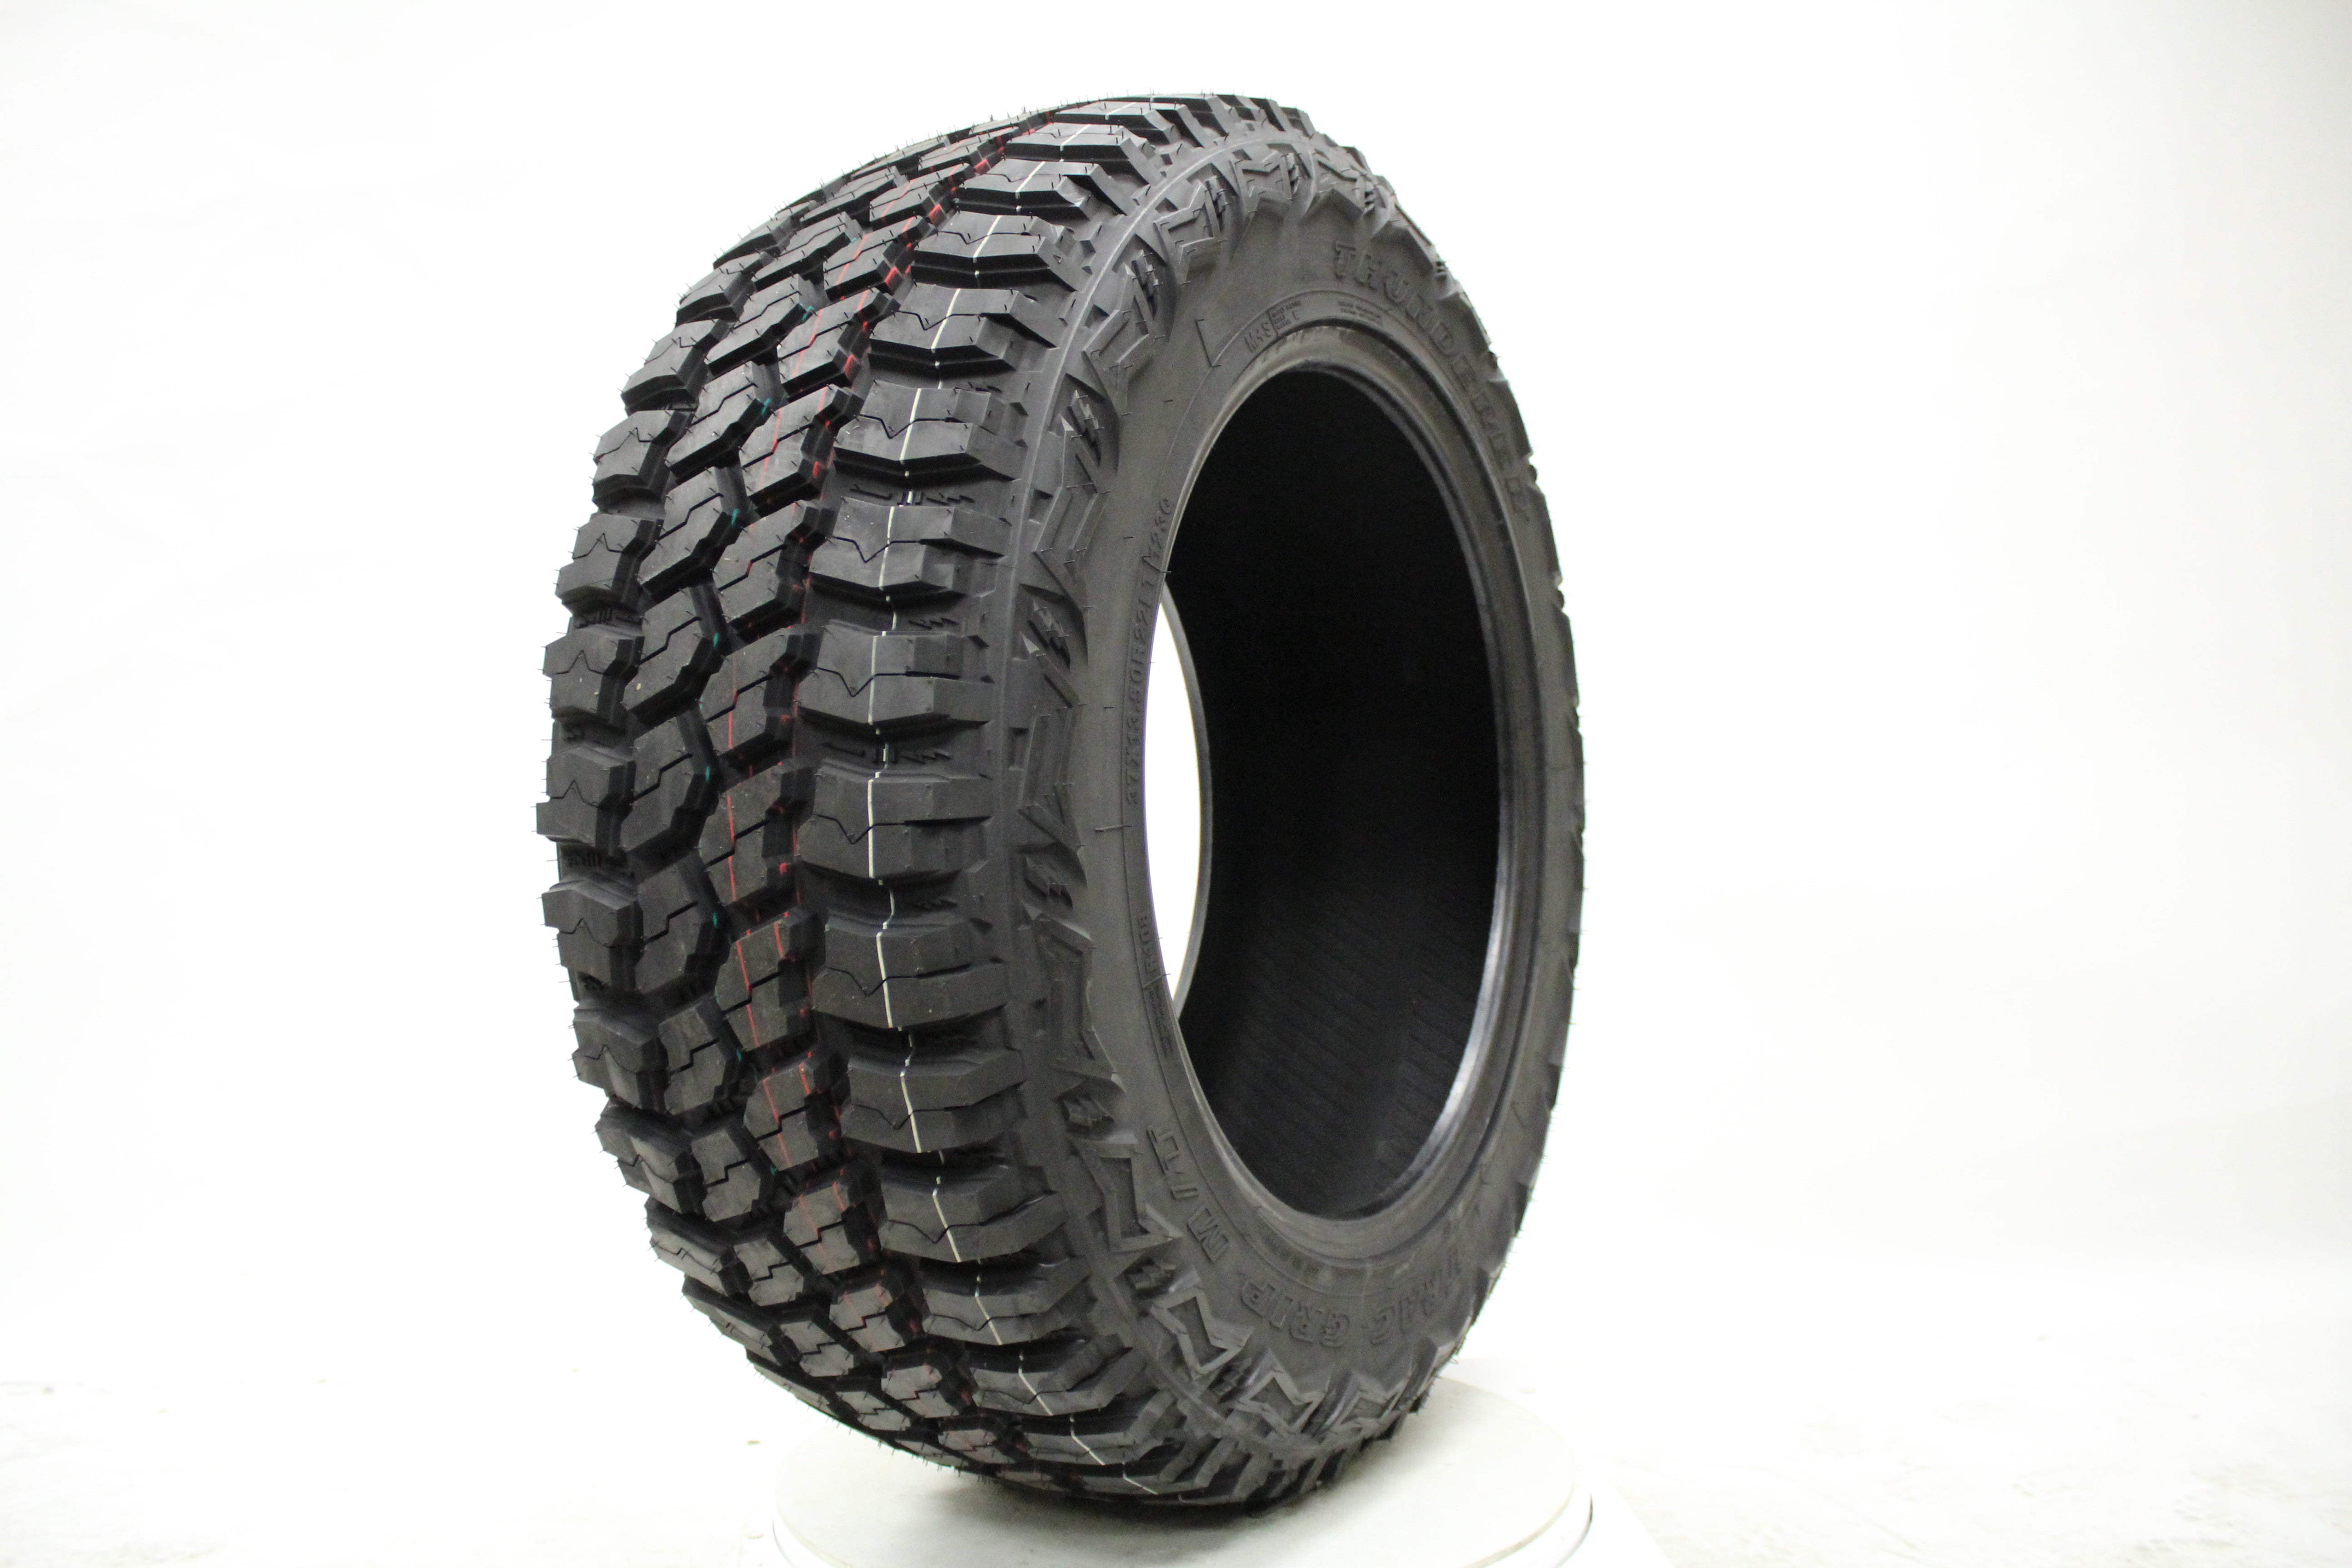 Eldorado Mud Claw Extreme M/T all_ Season Radial Tire-LT305/70R18 126Q 